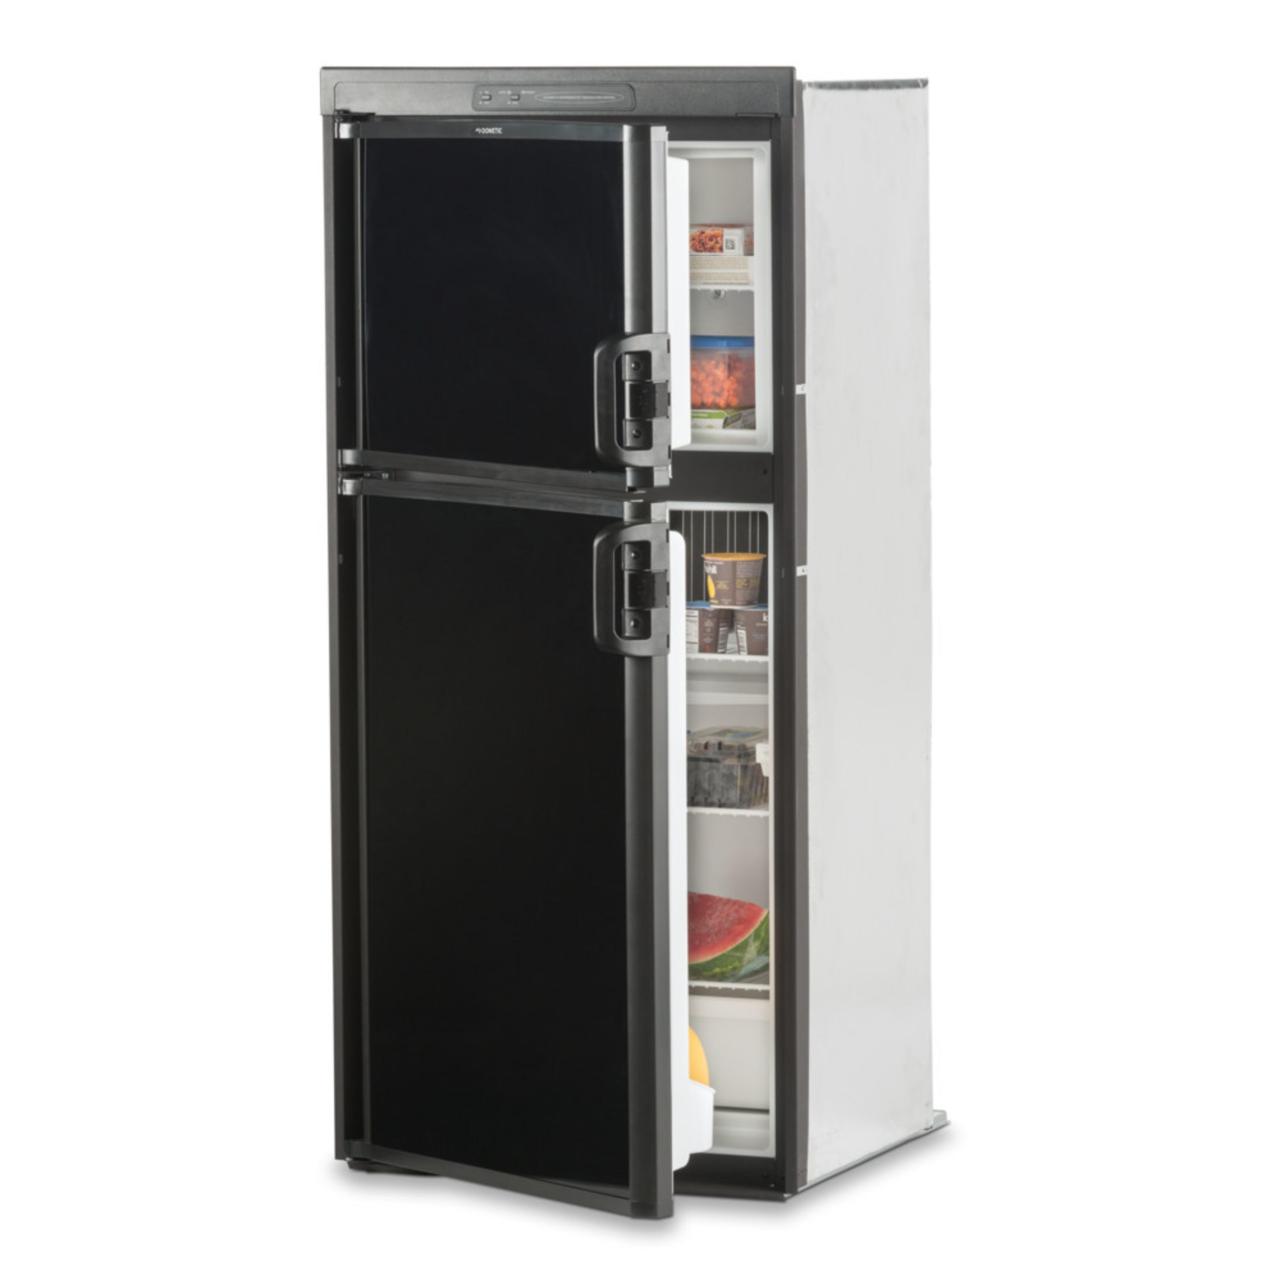 Dometic DM 2652 - Absorption Refrigerator, 6 cu ft, versatile shelf